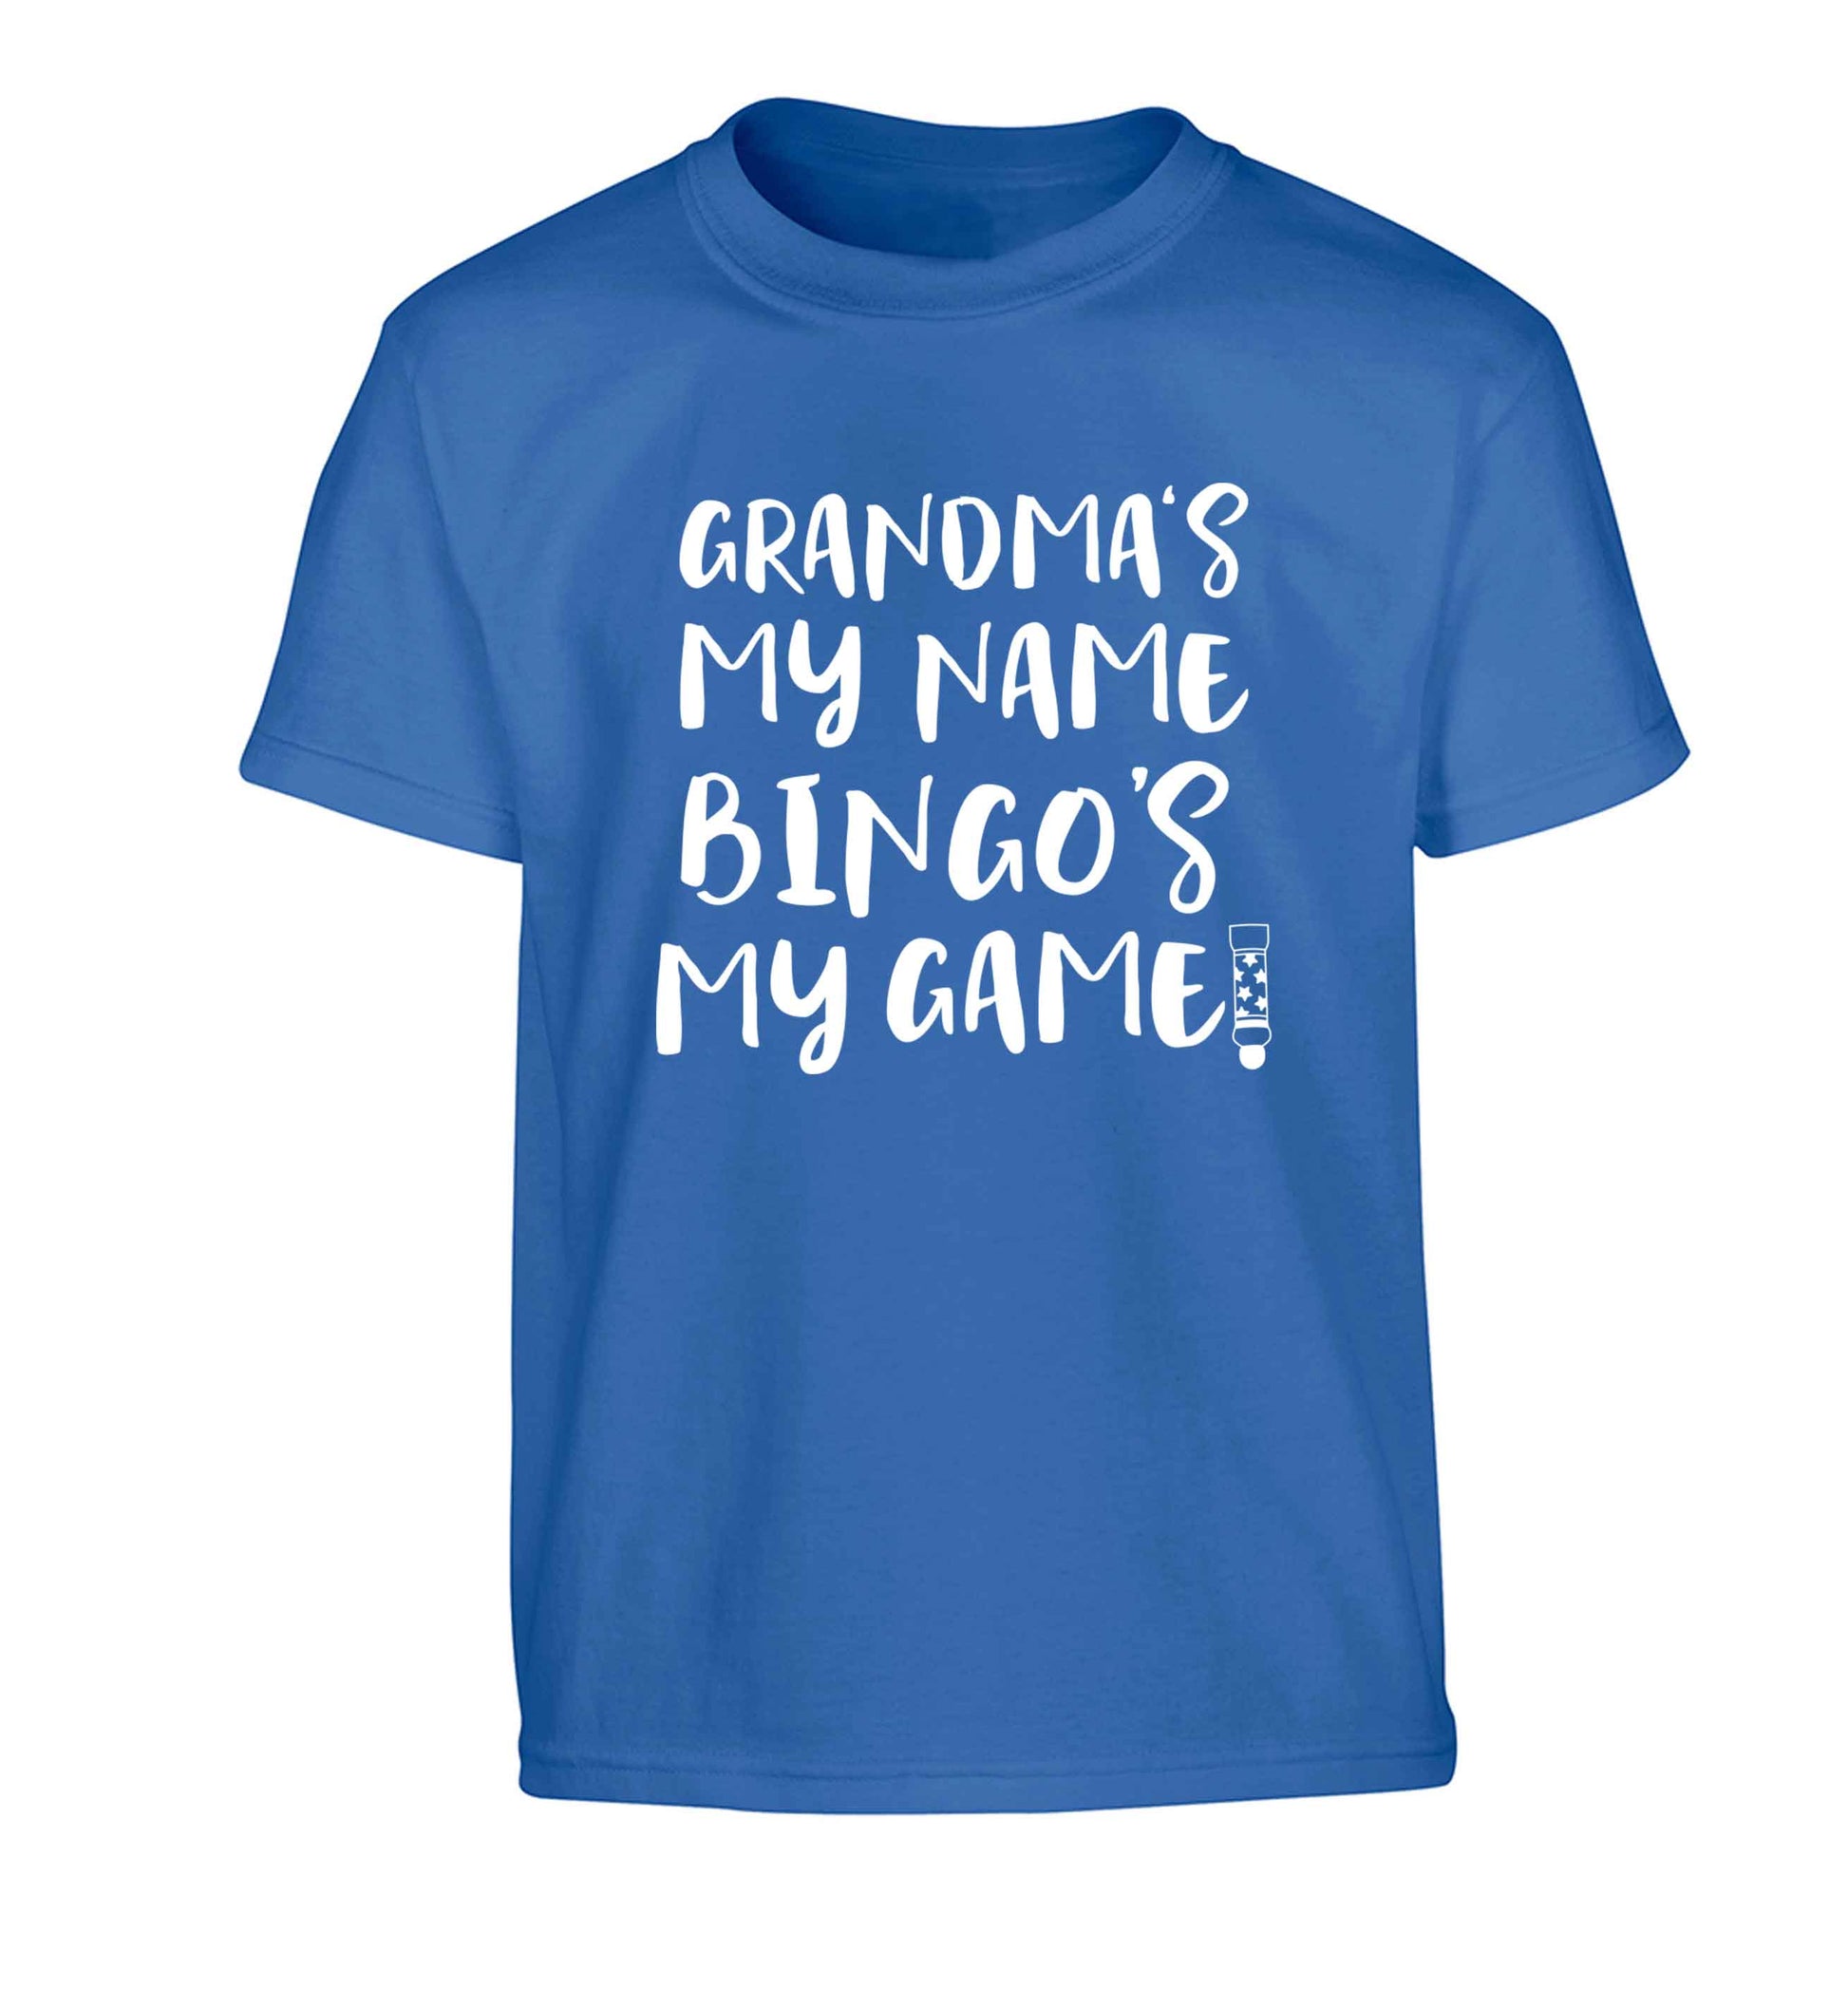 Grandma's my name bingo's my game! Children's blue Tshirt 12-13 Years